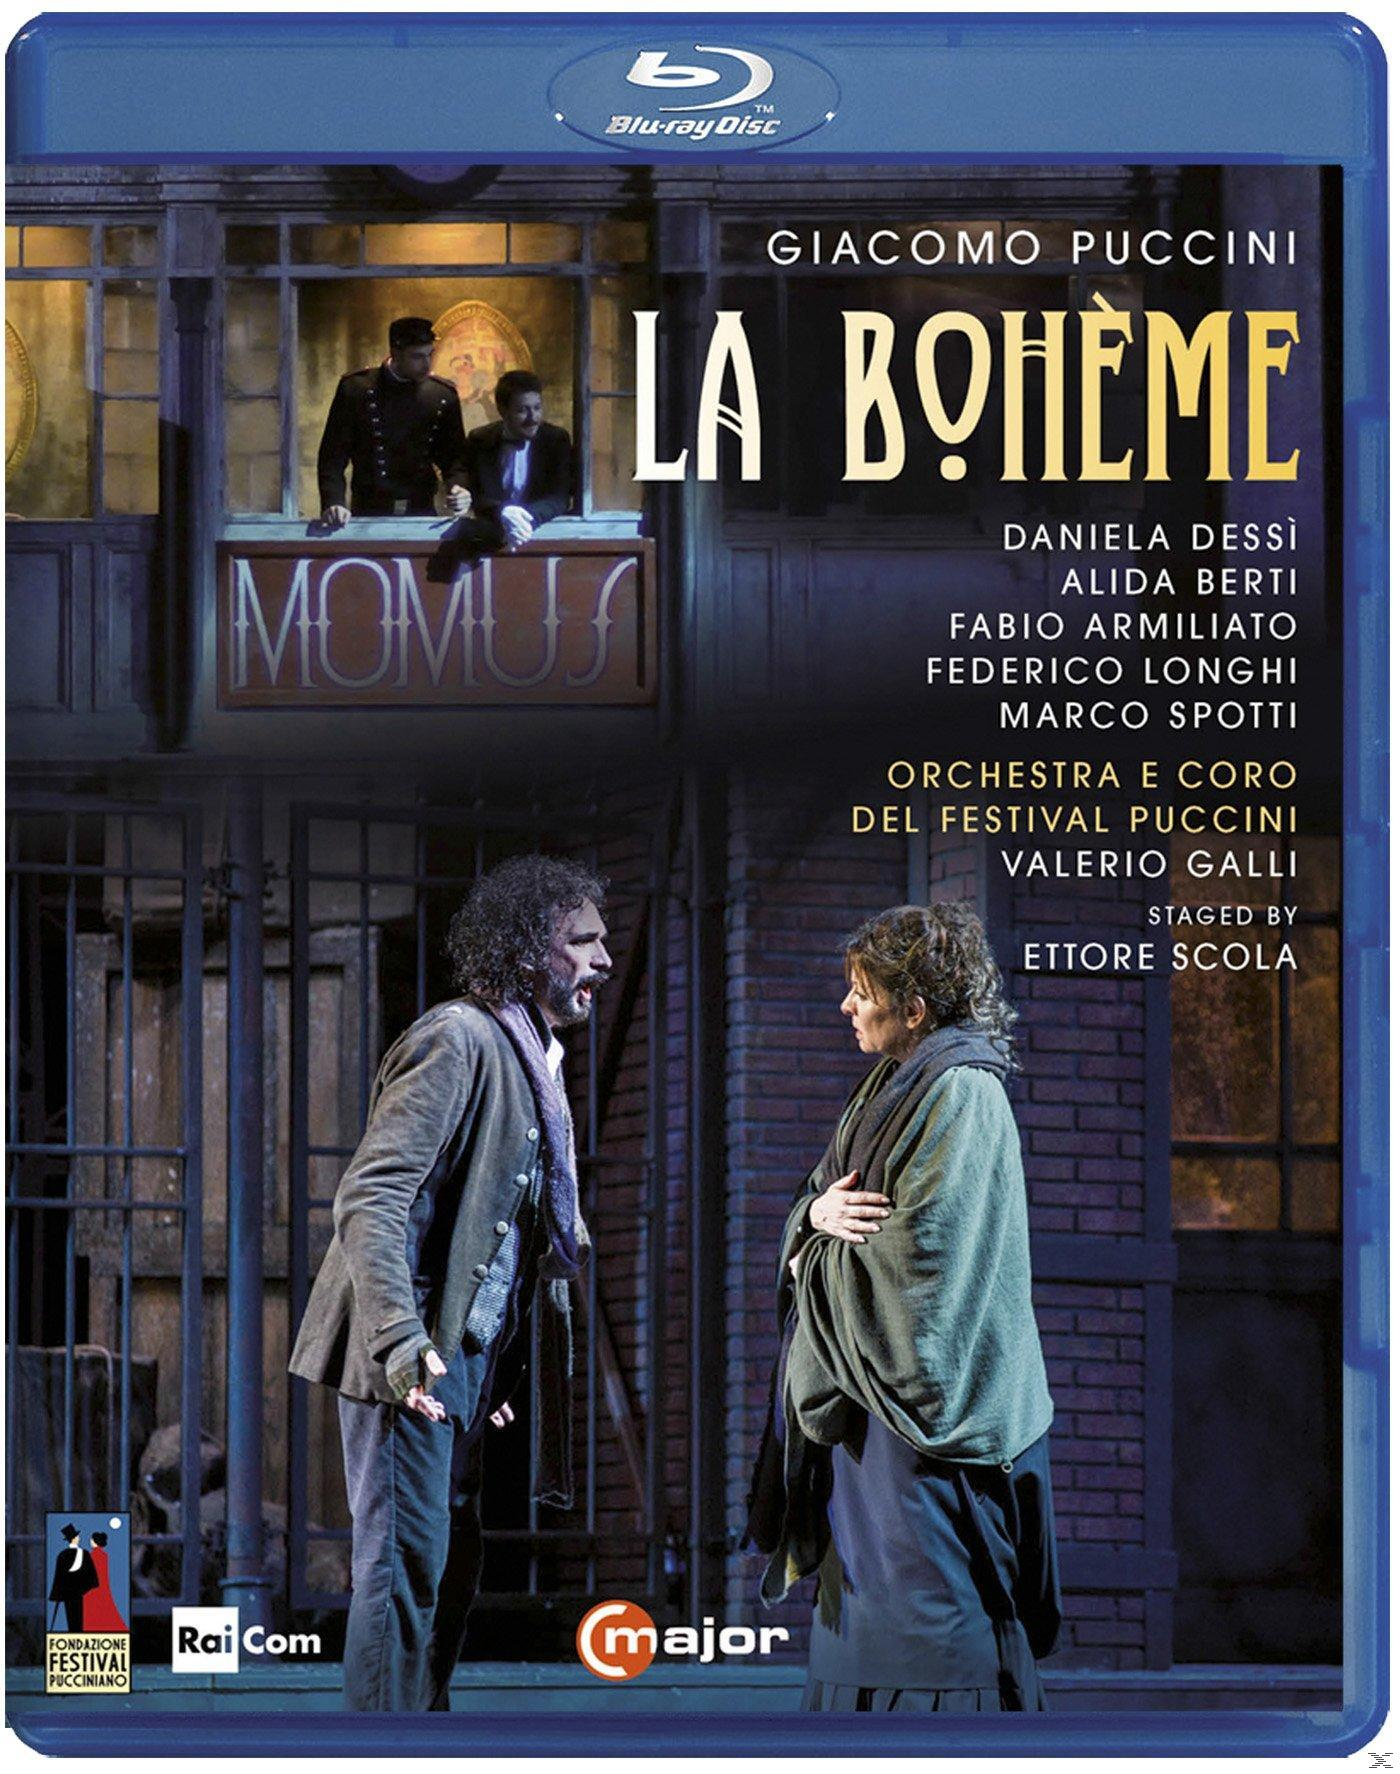 VARIOUS, La Orchestra - Puccini - Del Festival (Blu-ray) Boheme